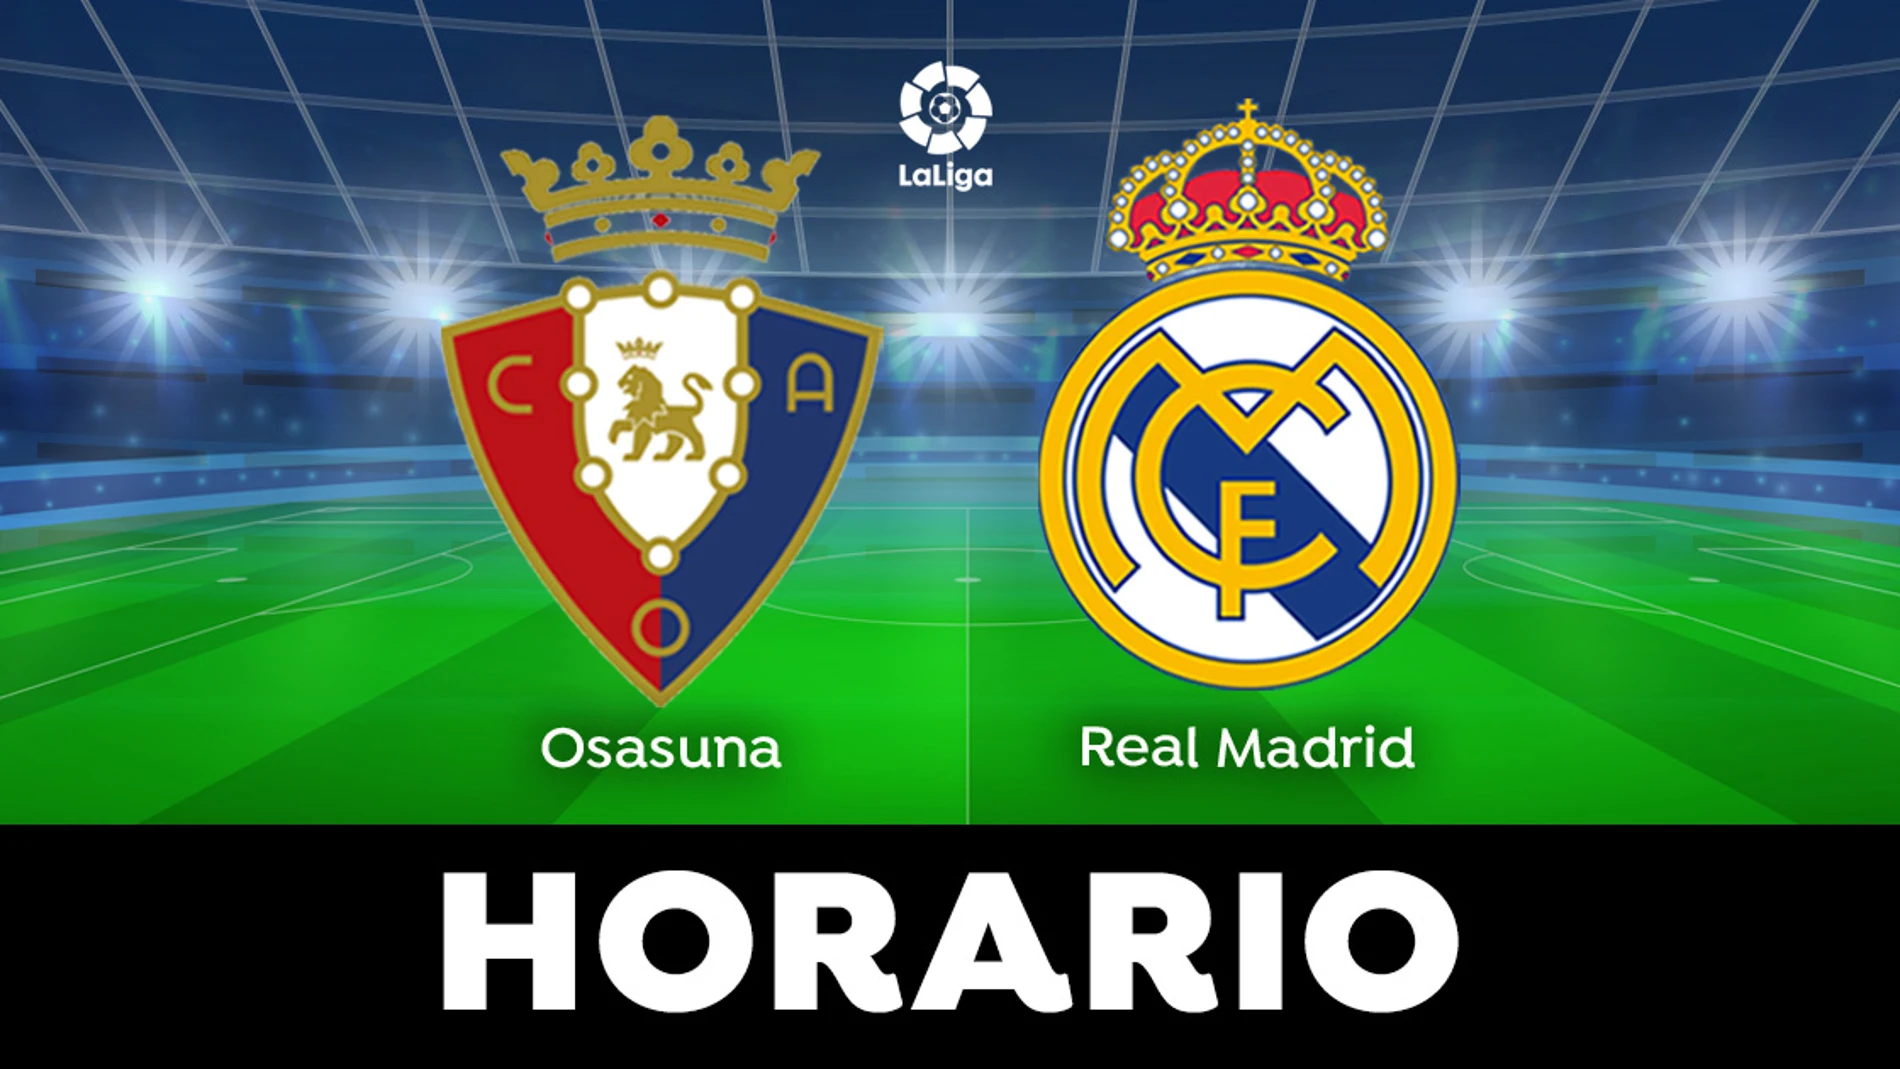 Osasuna - Real Madrid: Horario y dónde ver el partido de LaLiga en directo